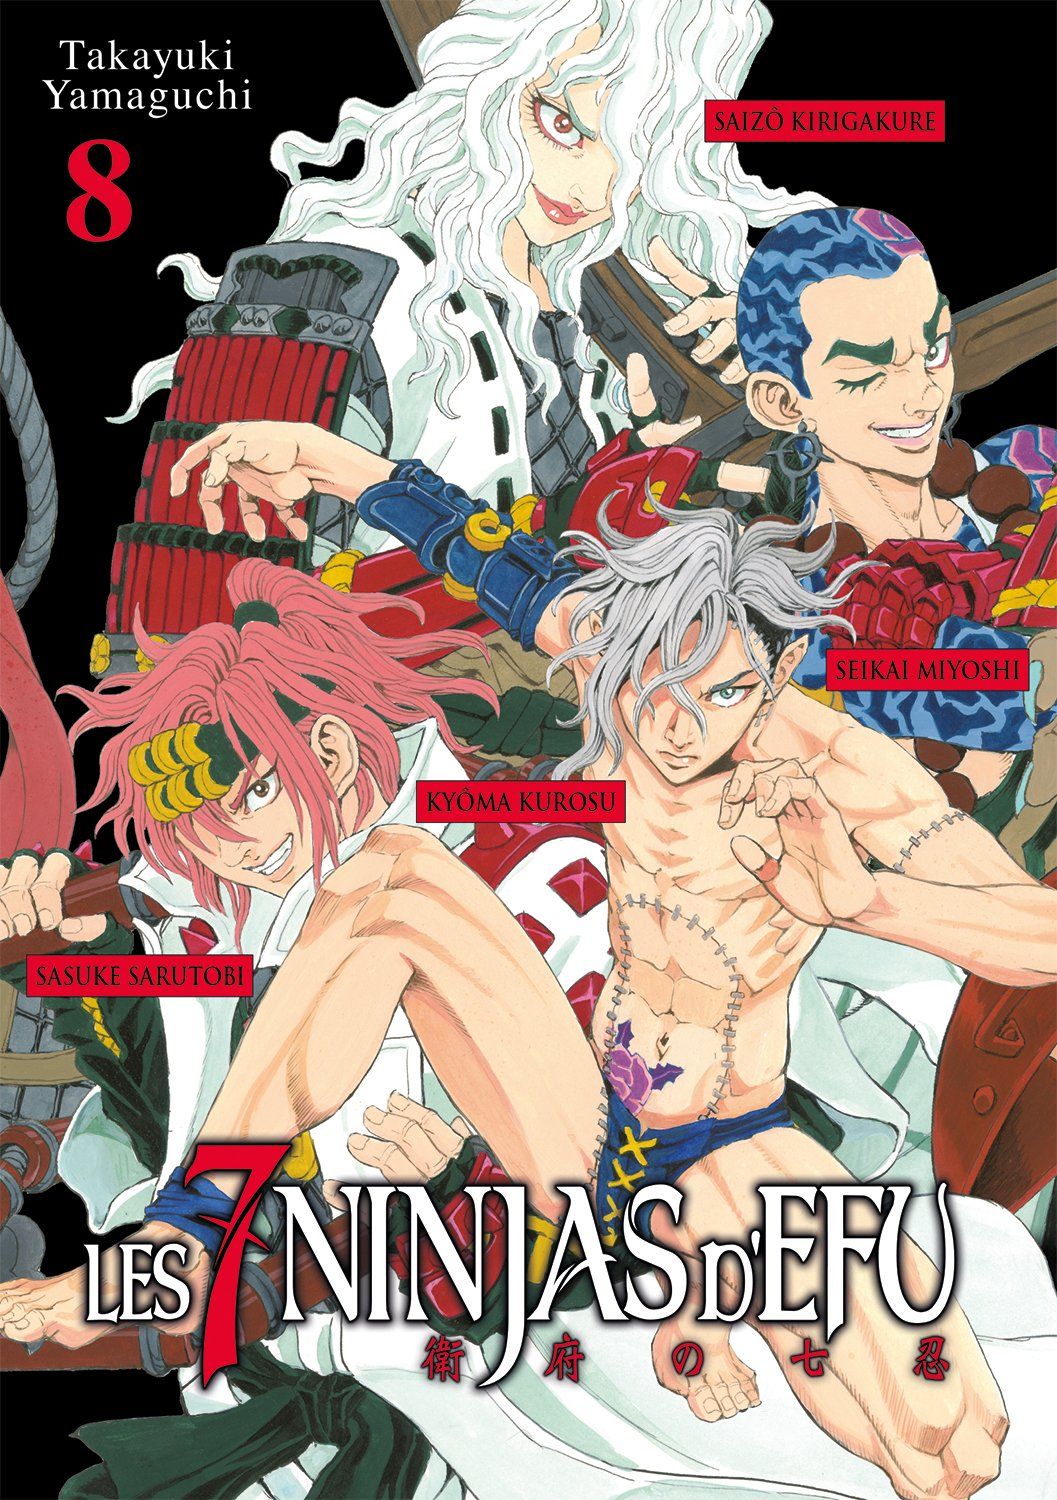 7 Ninjas d’Efu (les) Vol.8